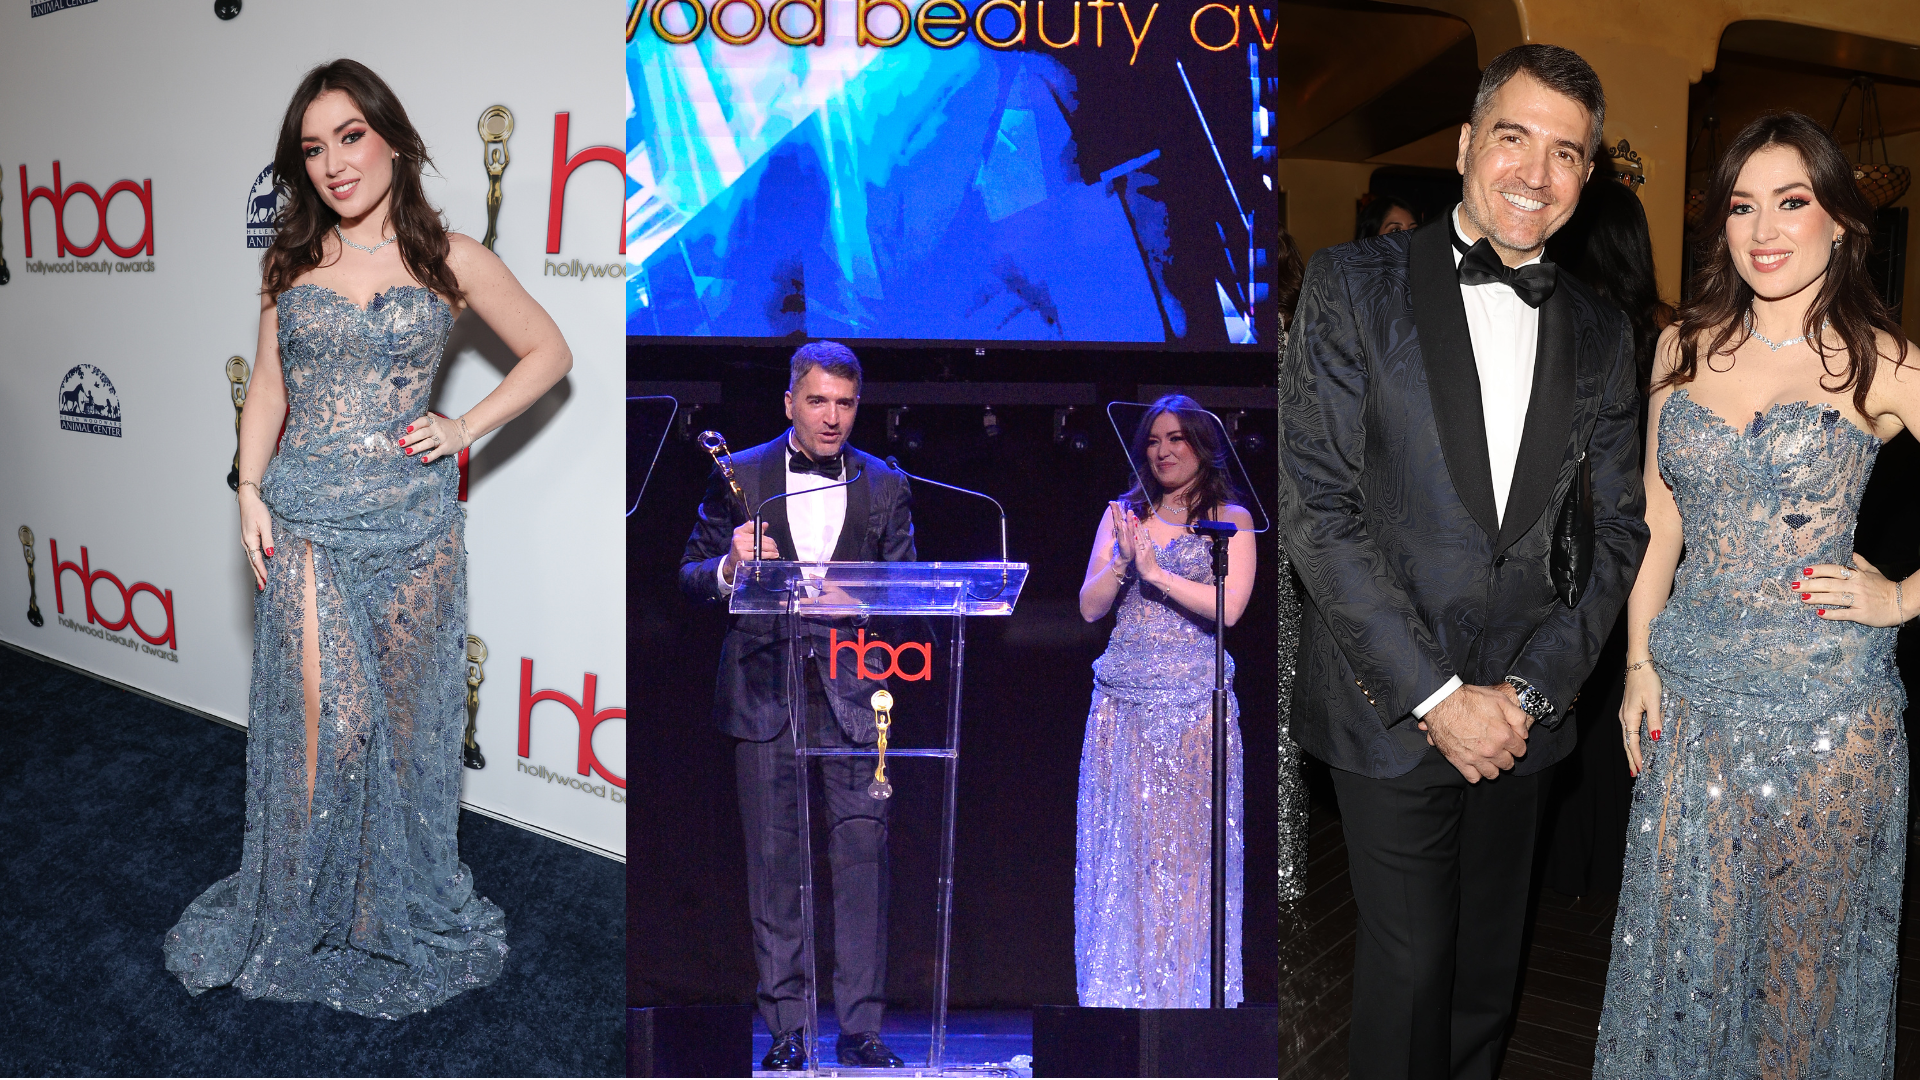 Marc Chaya, Elsa Esnoult, Maison Francis Kurkdjian, Hollywood Beauty Awards